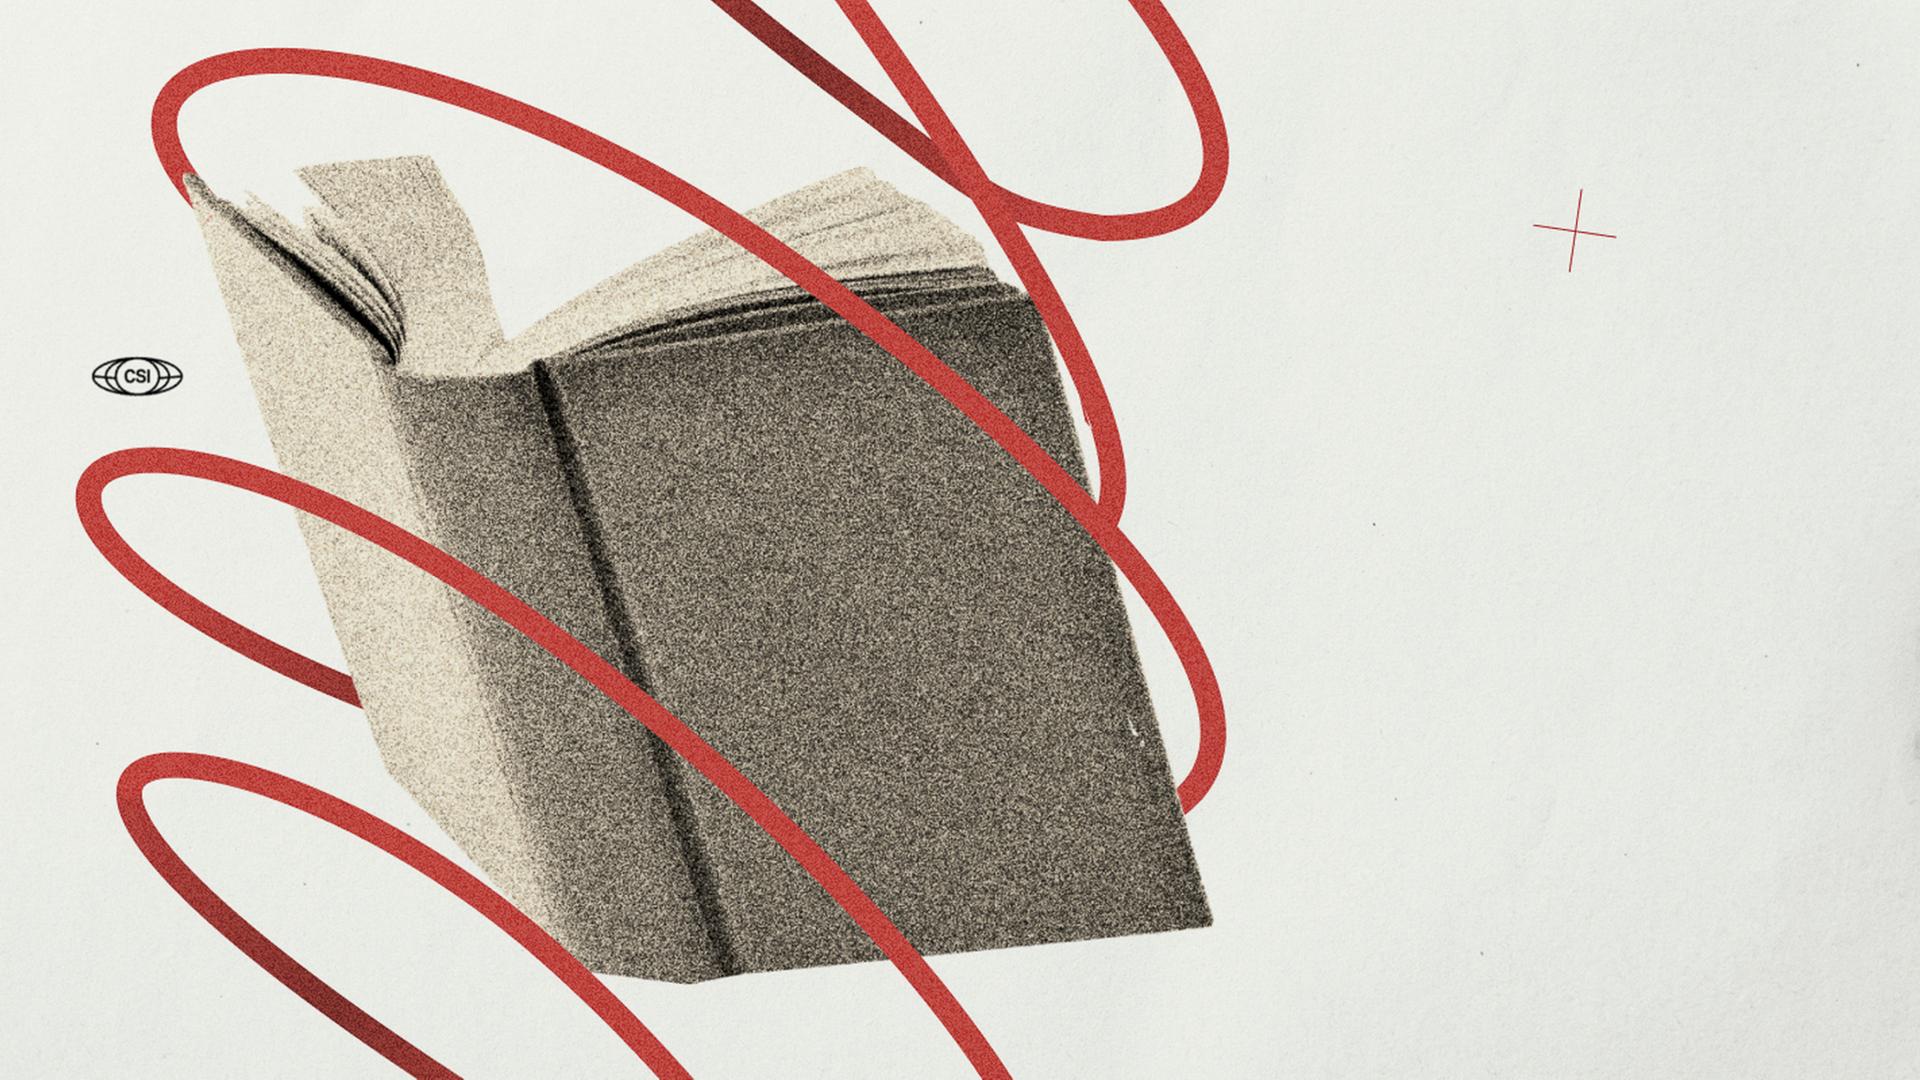 Illustration zum Recherche-Projekt China Science Investigation. Zu sehen ist ein Buch umringt von einem roten Band.